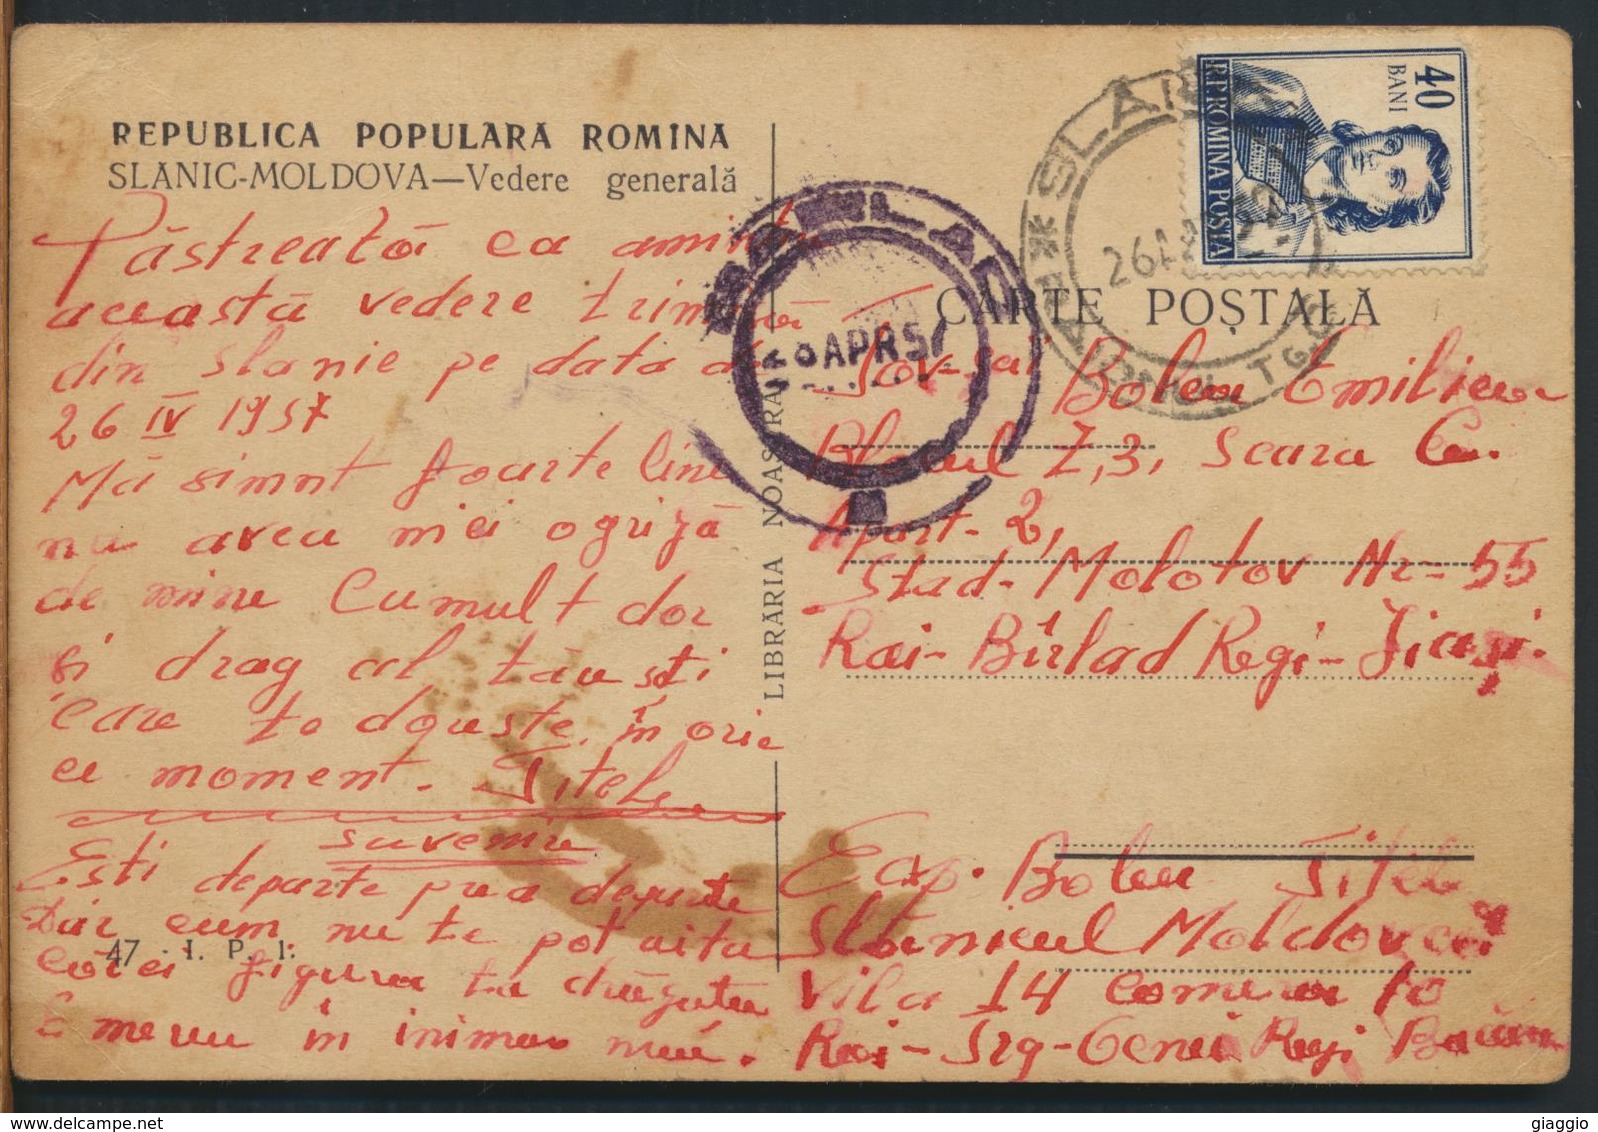 °°° 11486 - ROMANIA - SLANIC MOLDOVA - VEDERE GENERALA - 1957 With Stamps °°° - Romania